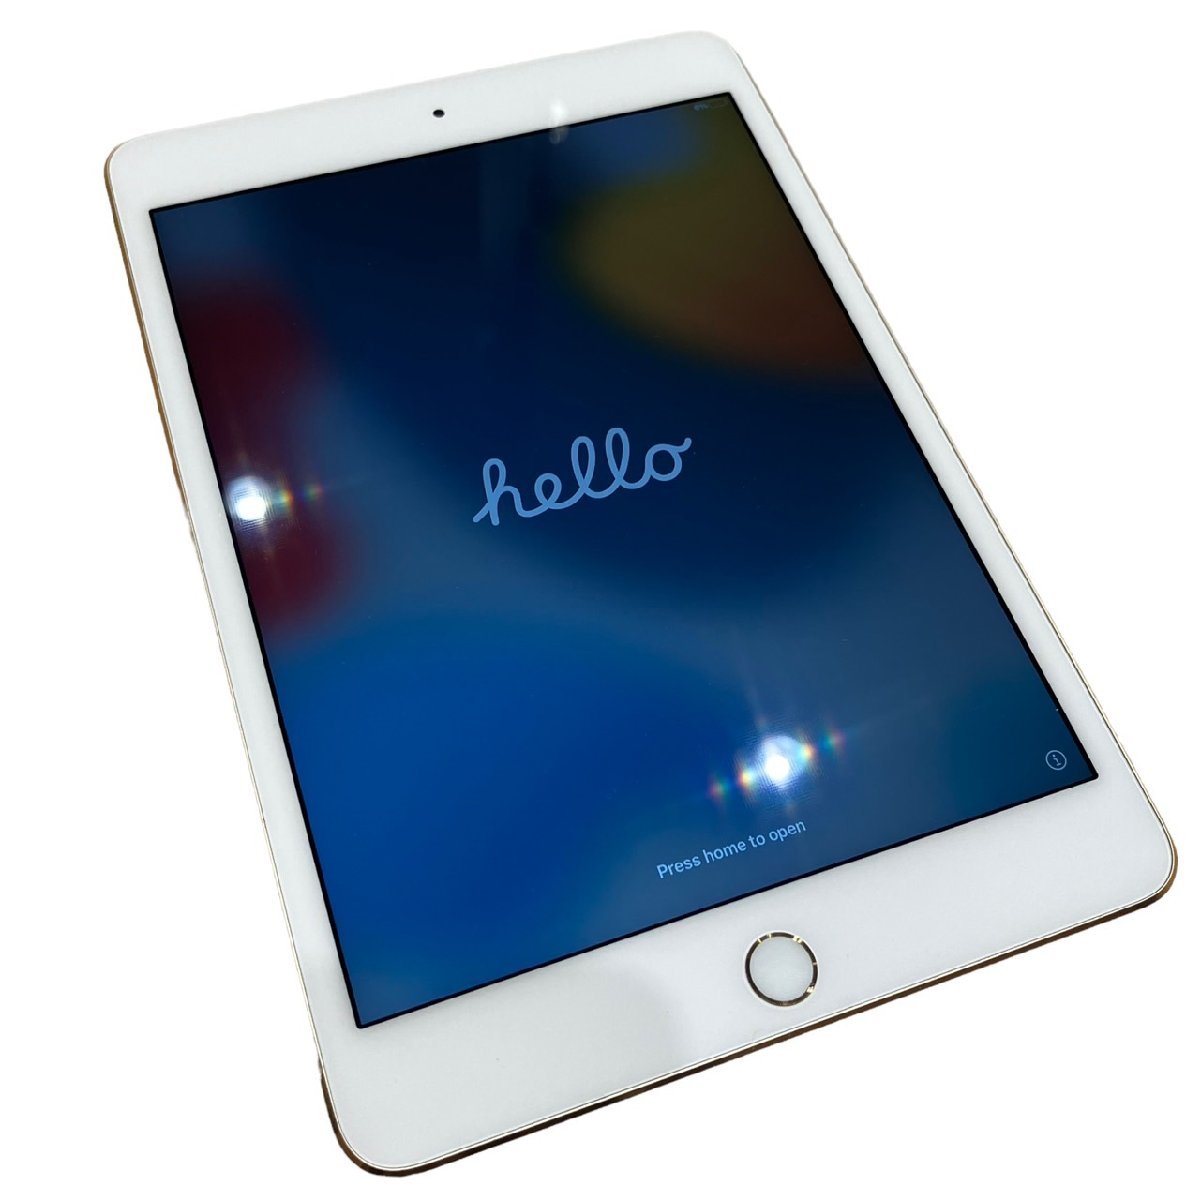 Apple アップル iPadmini 第4世代 A1538 Wi-Fiモデル 128GB FK9Q2J/A